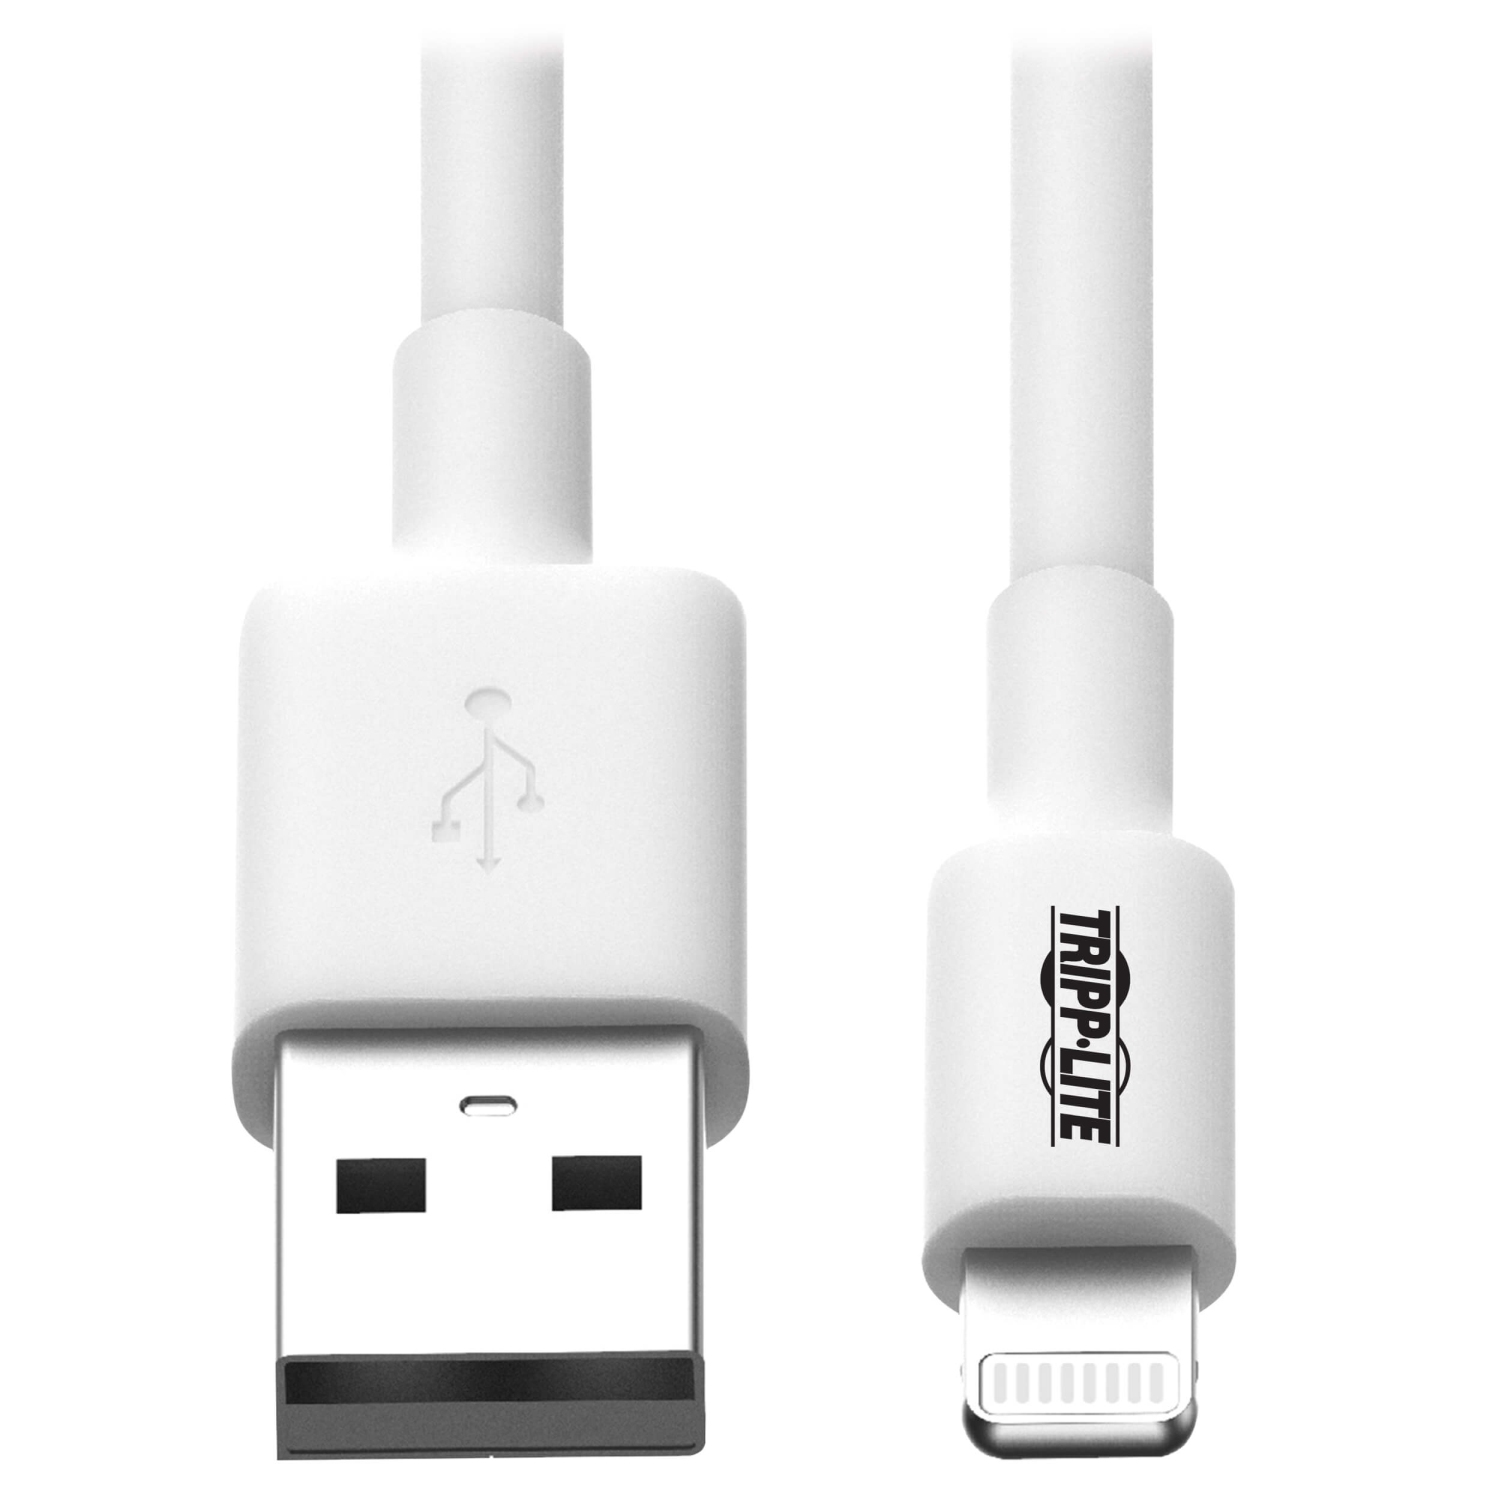 Kabel USB-A 2.0 / Lightning Synchronizace/Nabíjení, MFi Certified, Samec/Samec, bílá, 1.83m